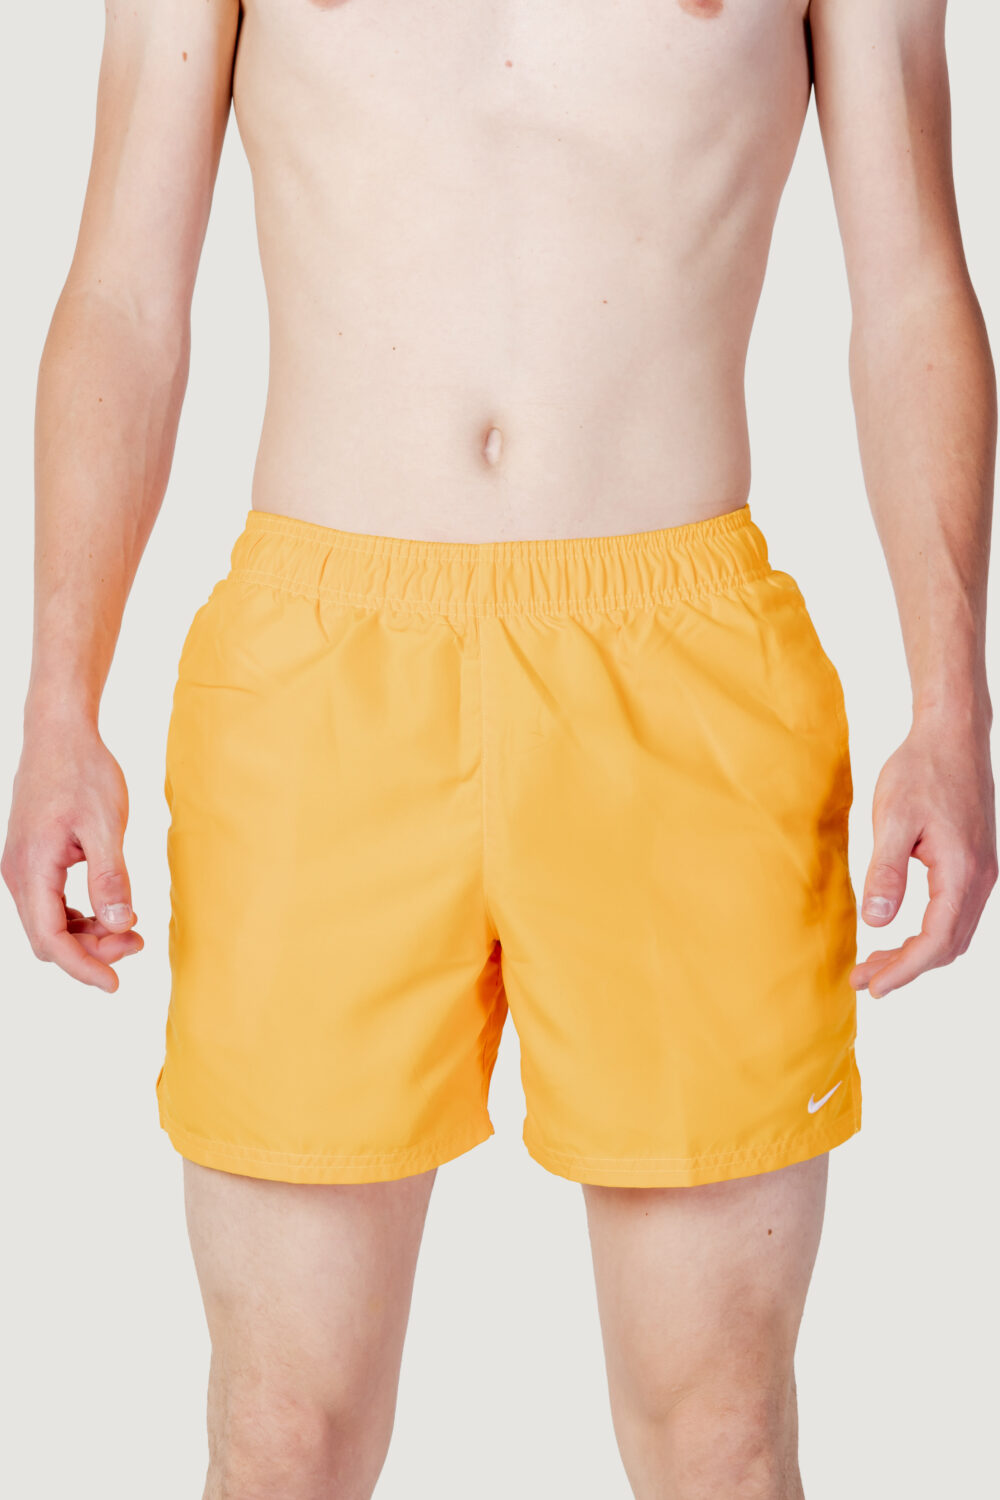 Costume da bagno Nike Swim volley short Arancione Fluo - Foto 5